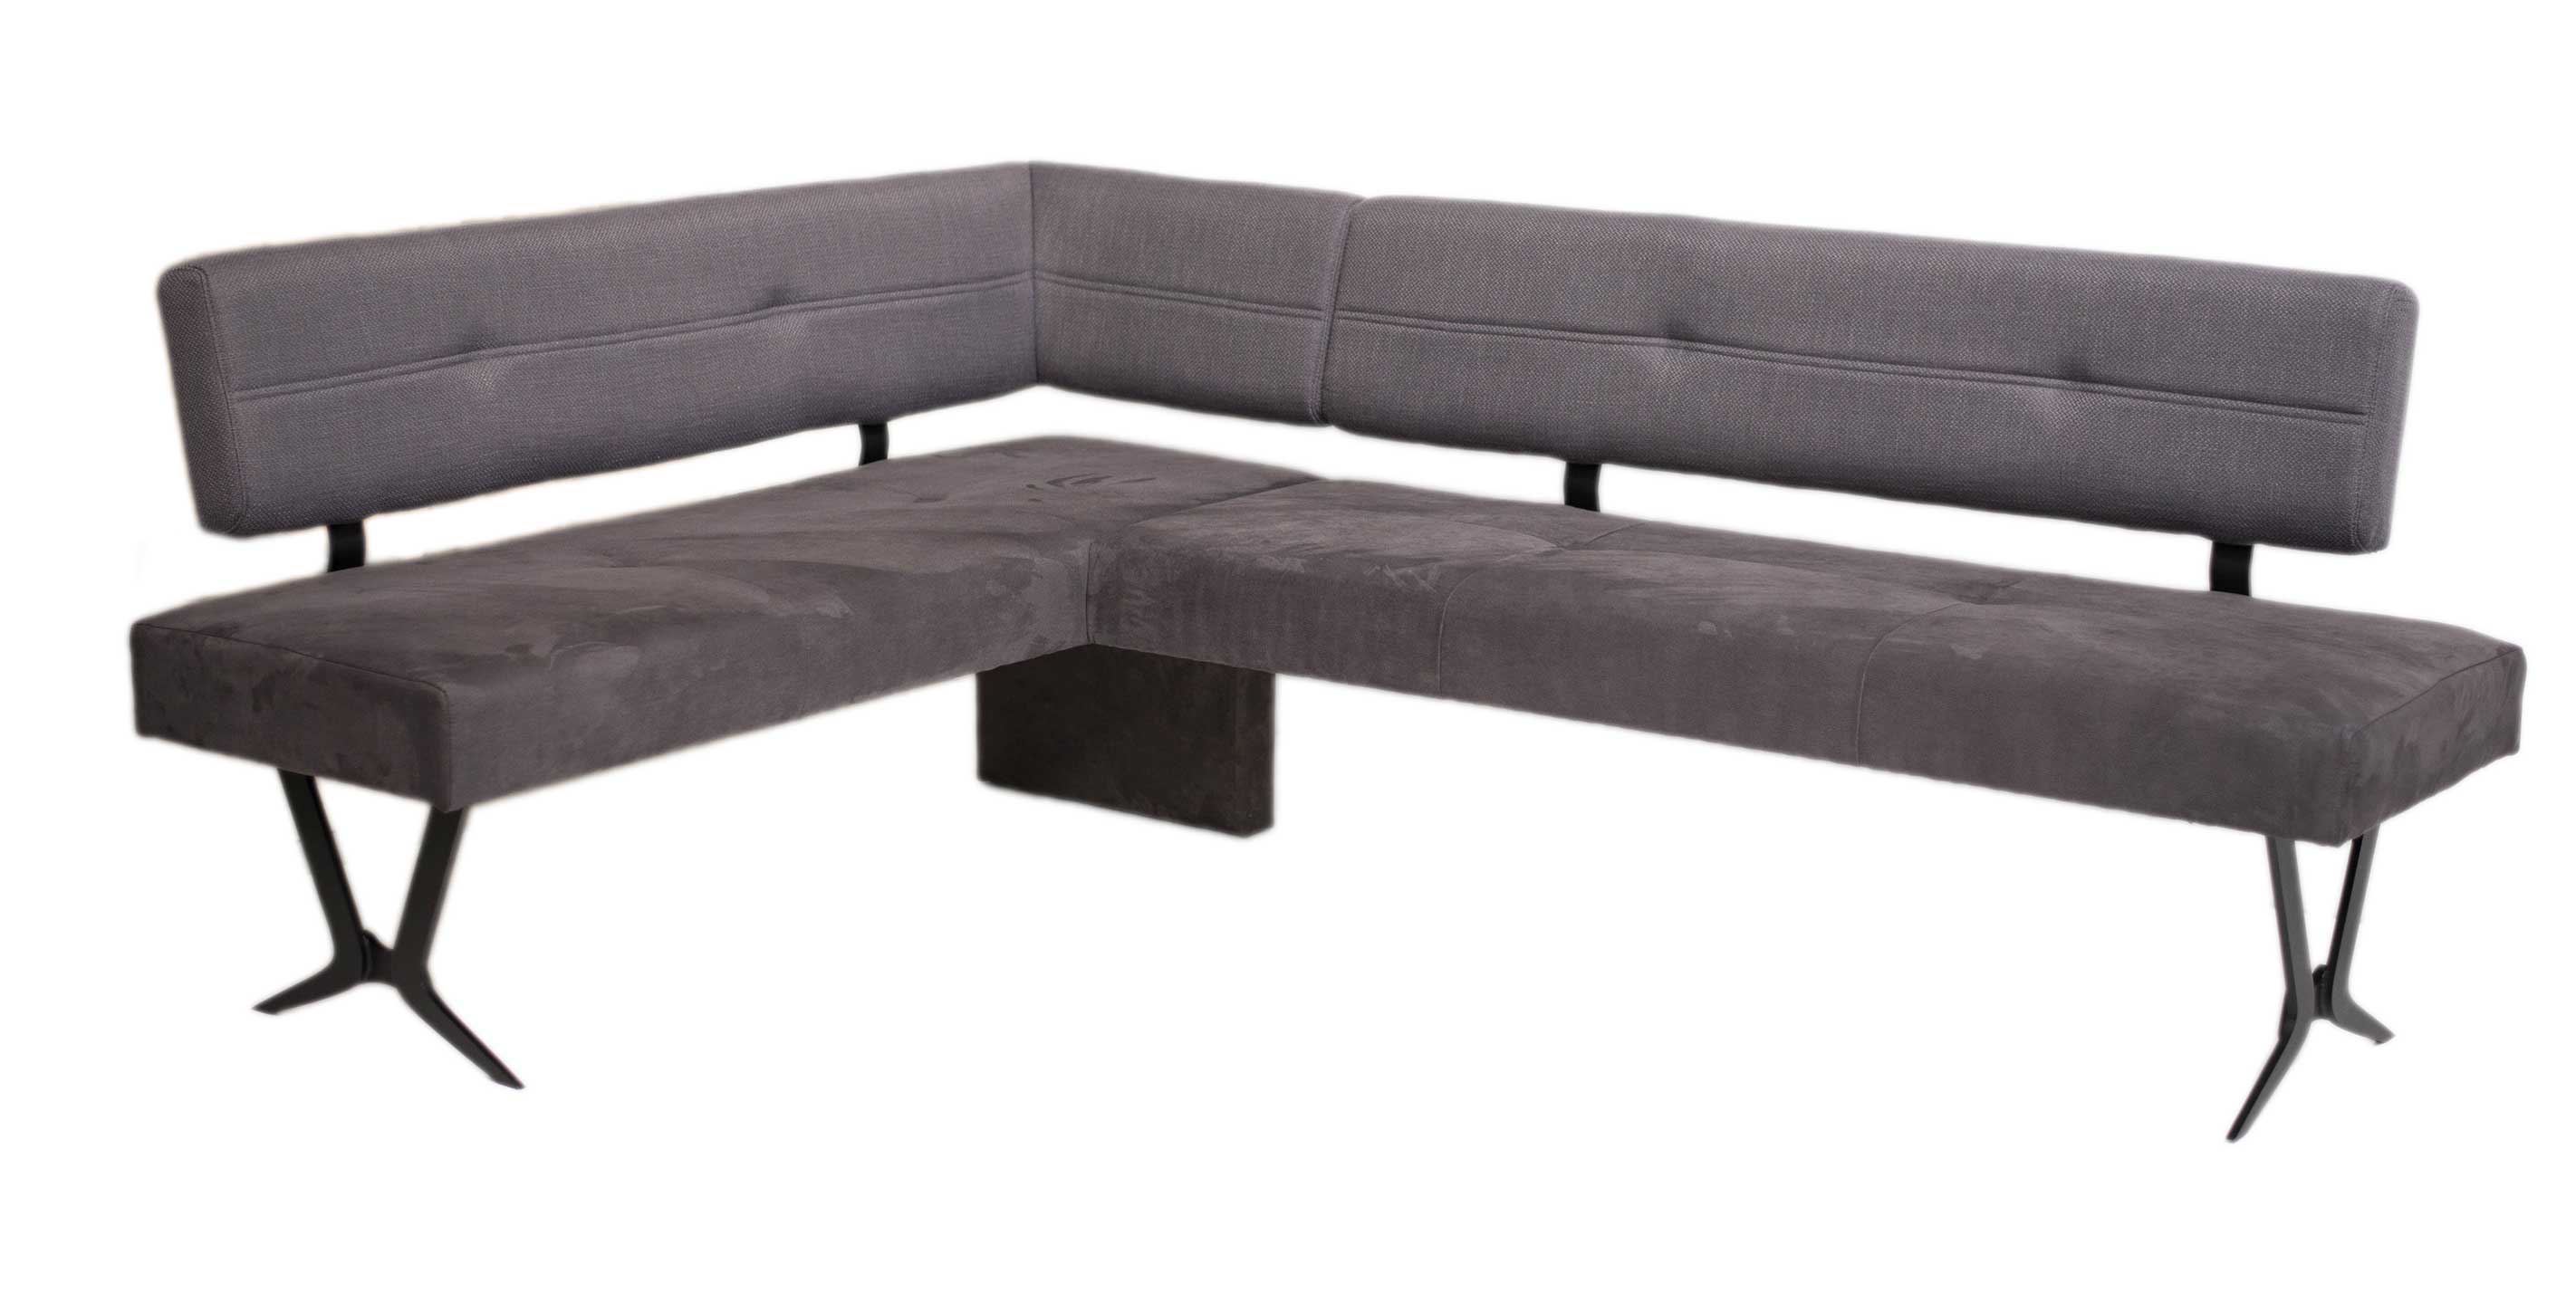 Standard Furniture Sant Etienne moderne Eckbank mit Metallgestell schwarz